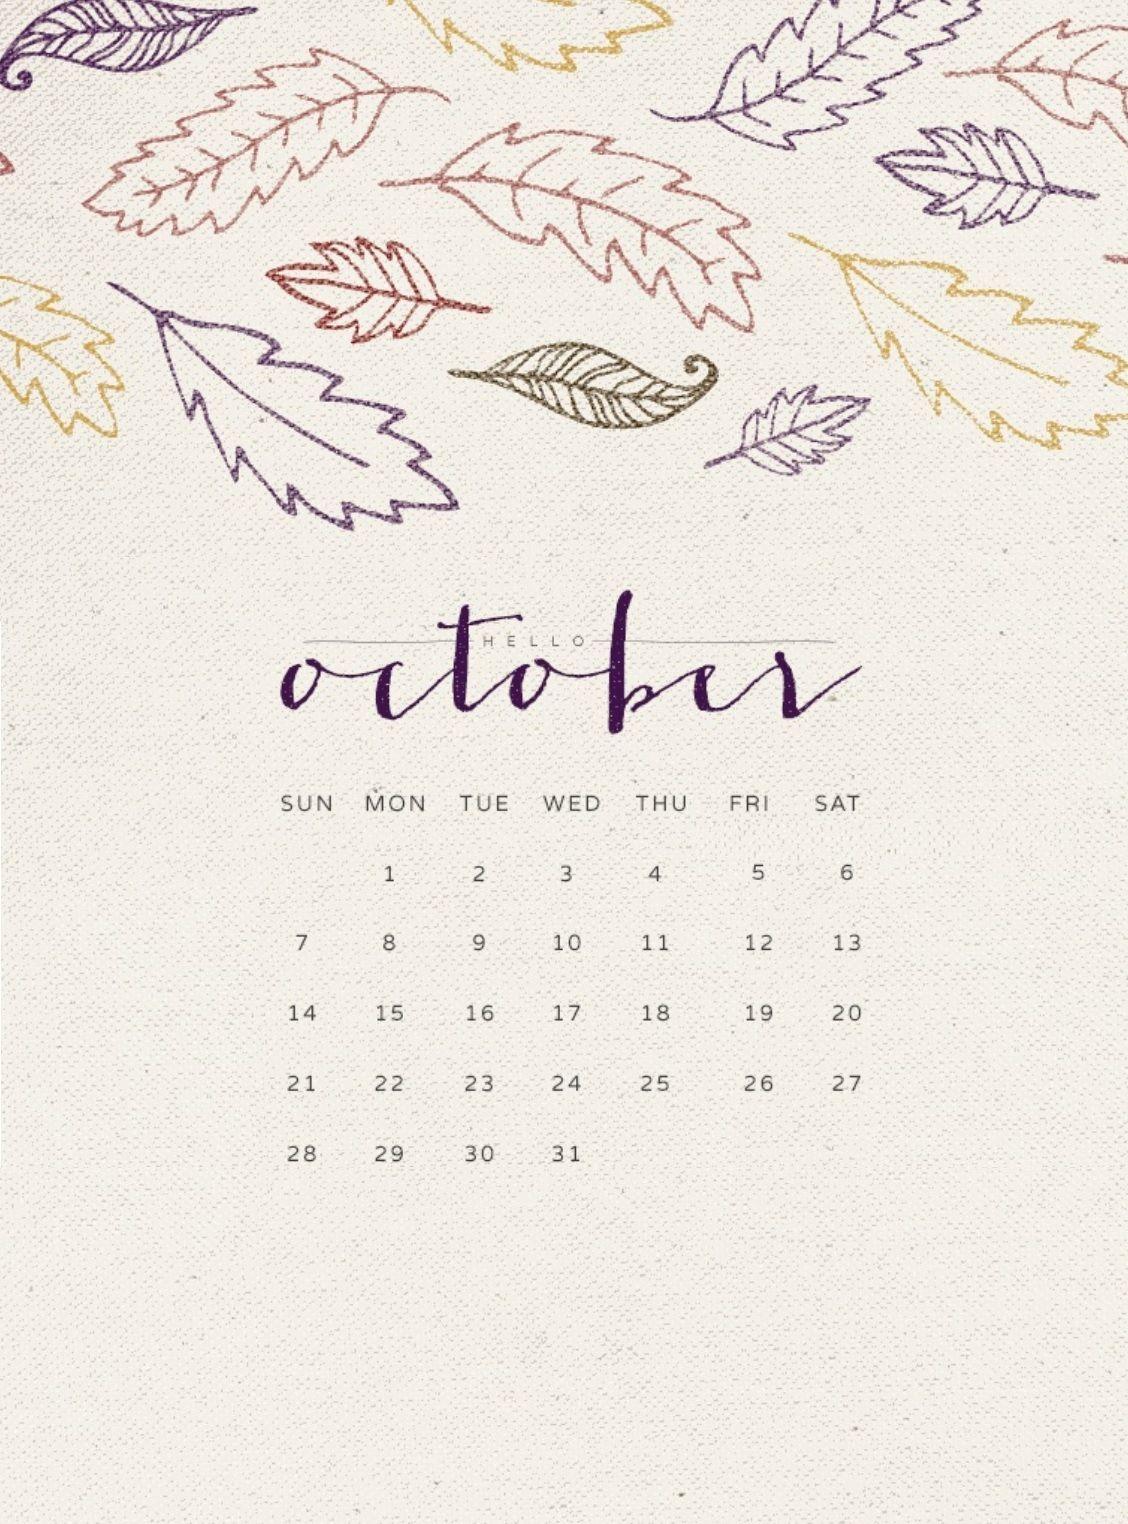 Hello October 2018 Calendar Wallpaper. Calendar 2018